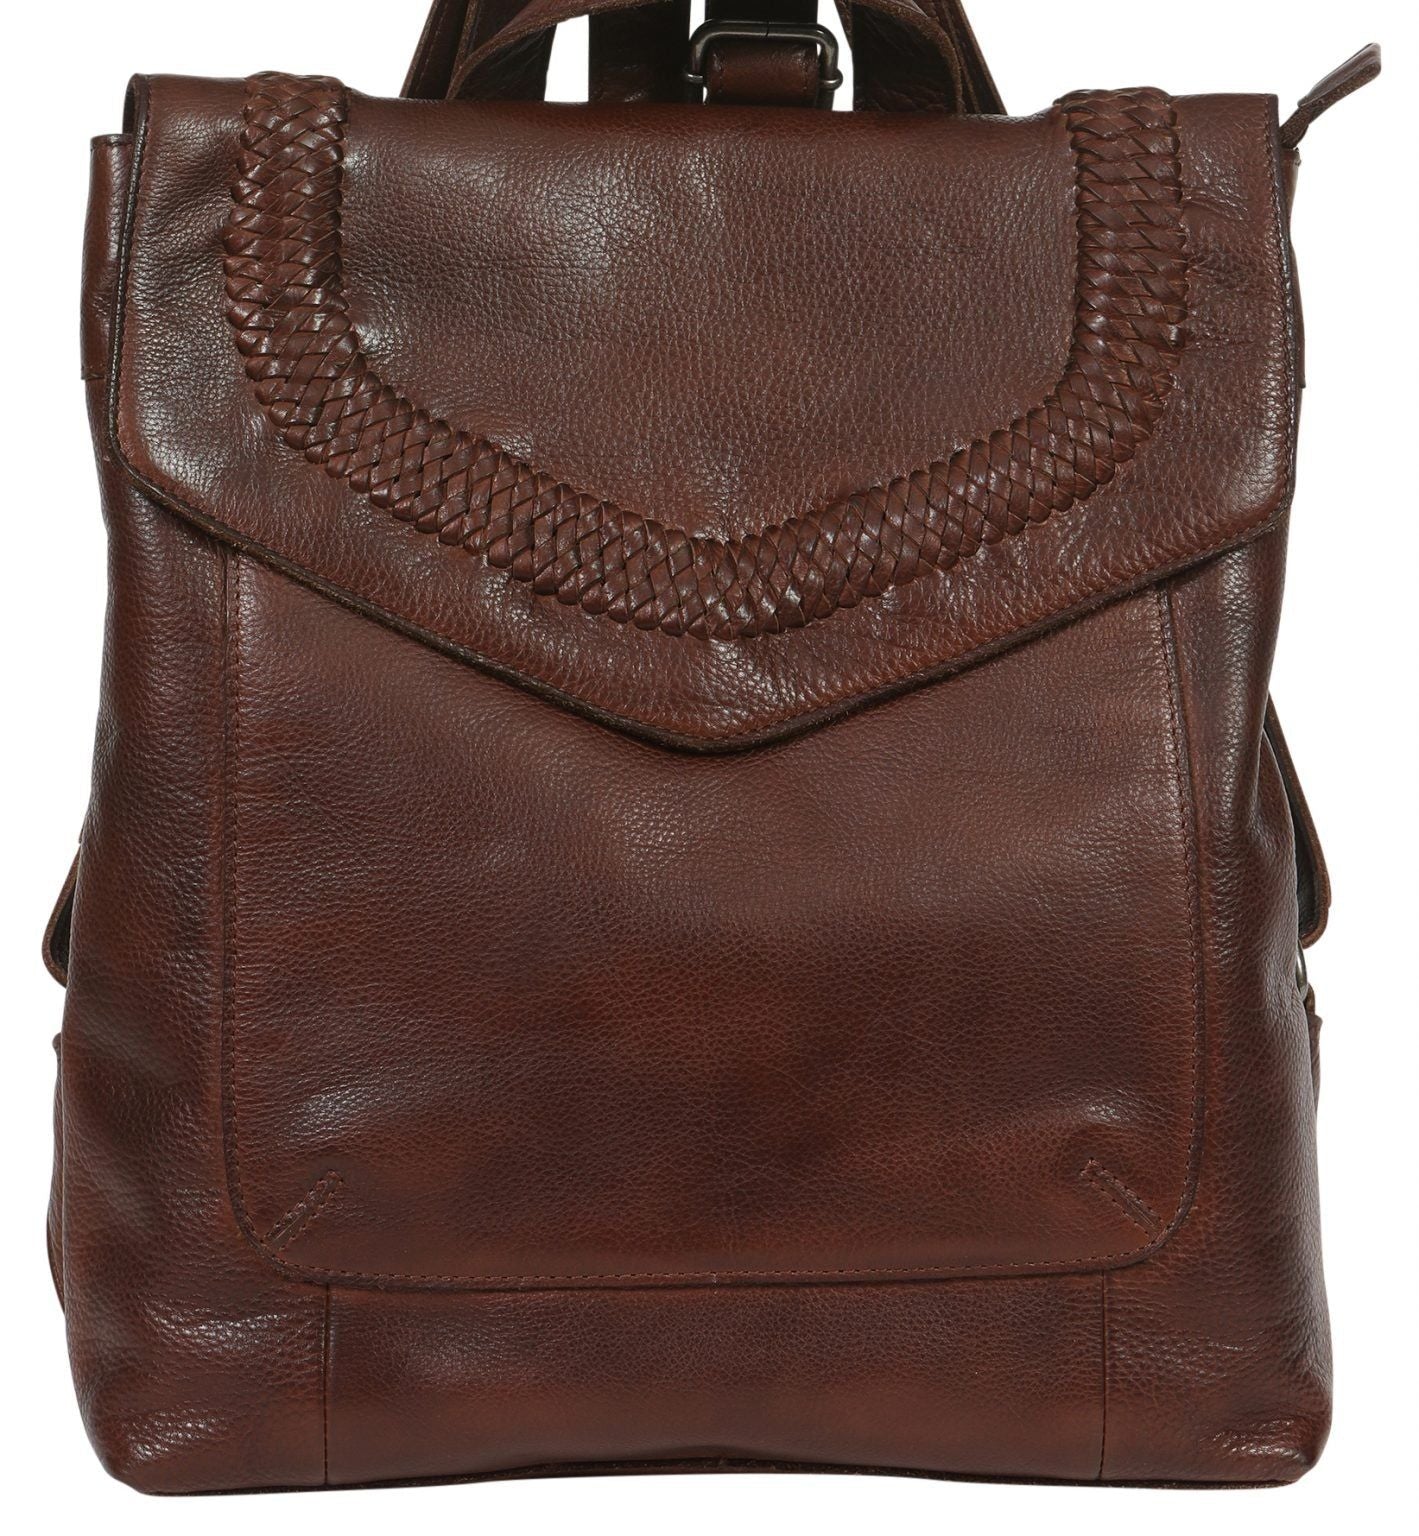 Modapelle - Ladies Vintage Leather Backpack - rainbowbags